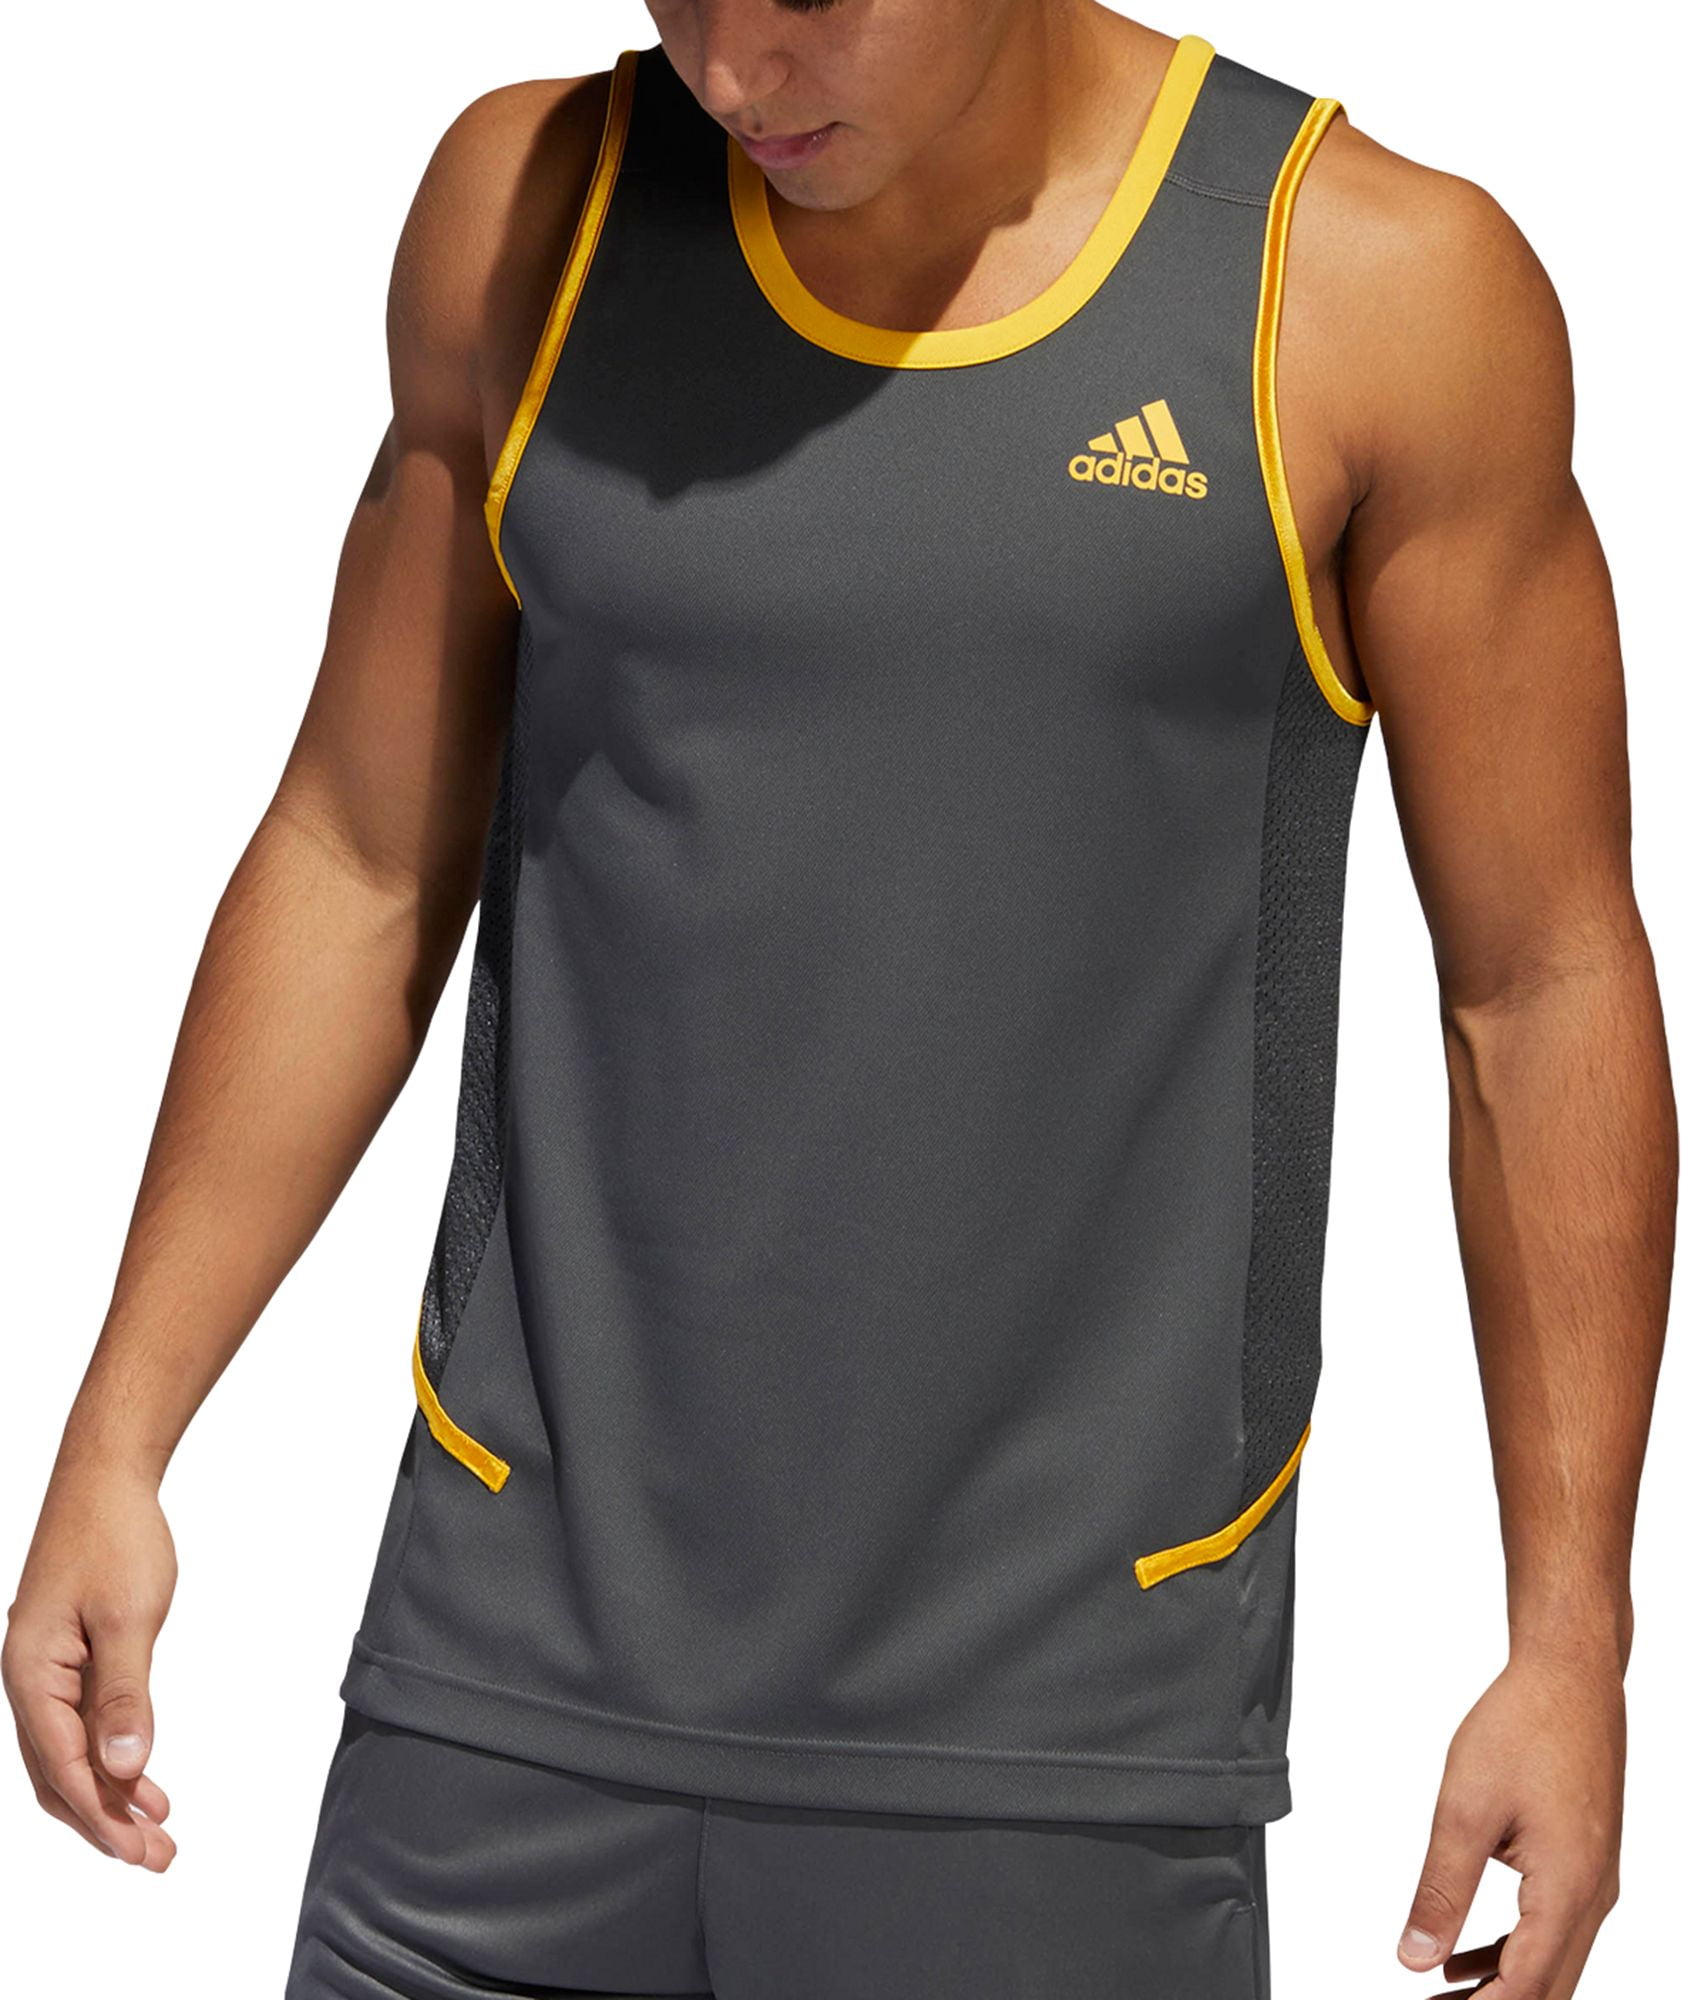 Adidas - adidas Men's Accelerate Basketball Tank Top - Walmart.com